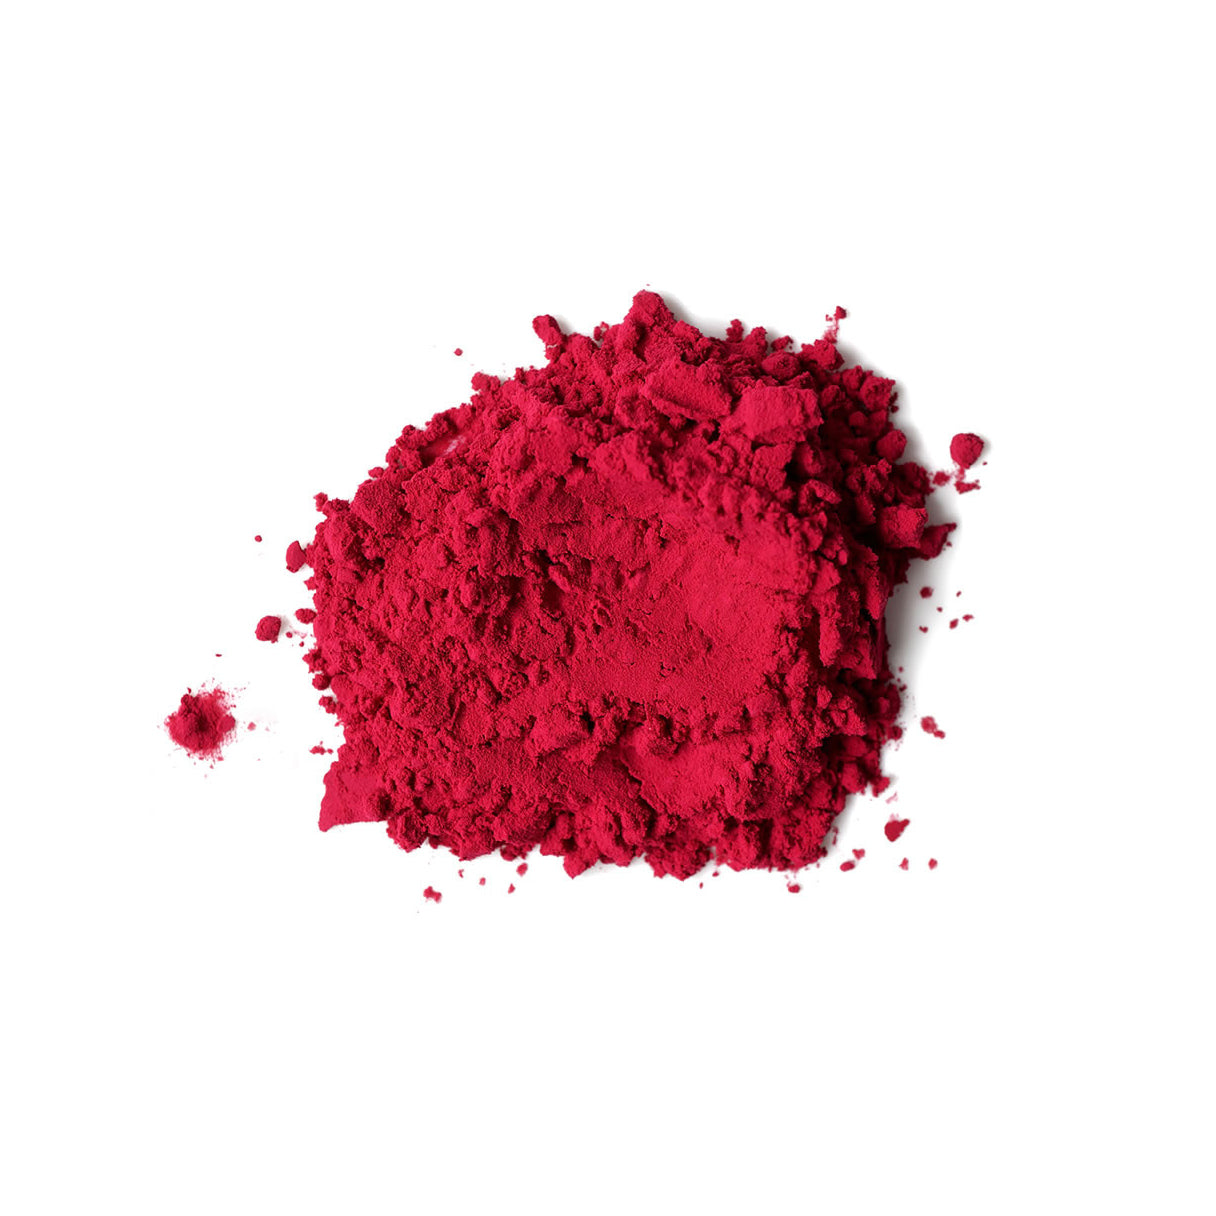 Sosa All Natural Food Colouring in Powder, Pink